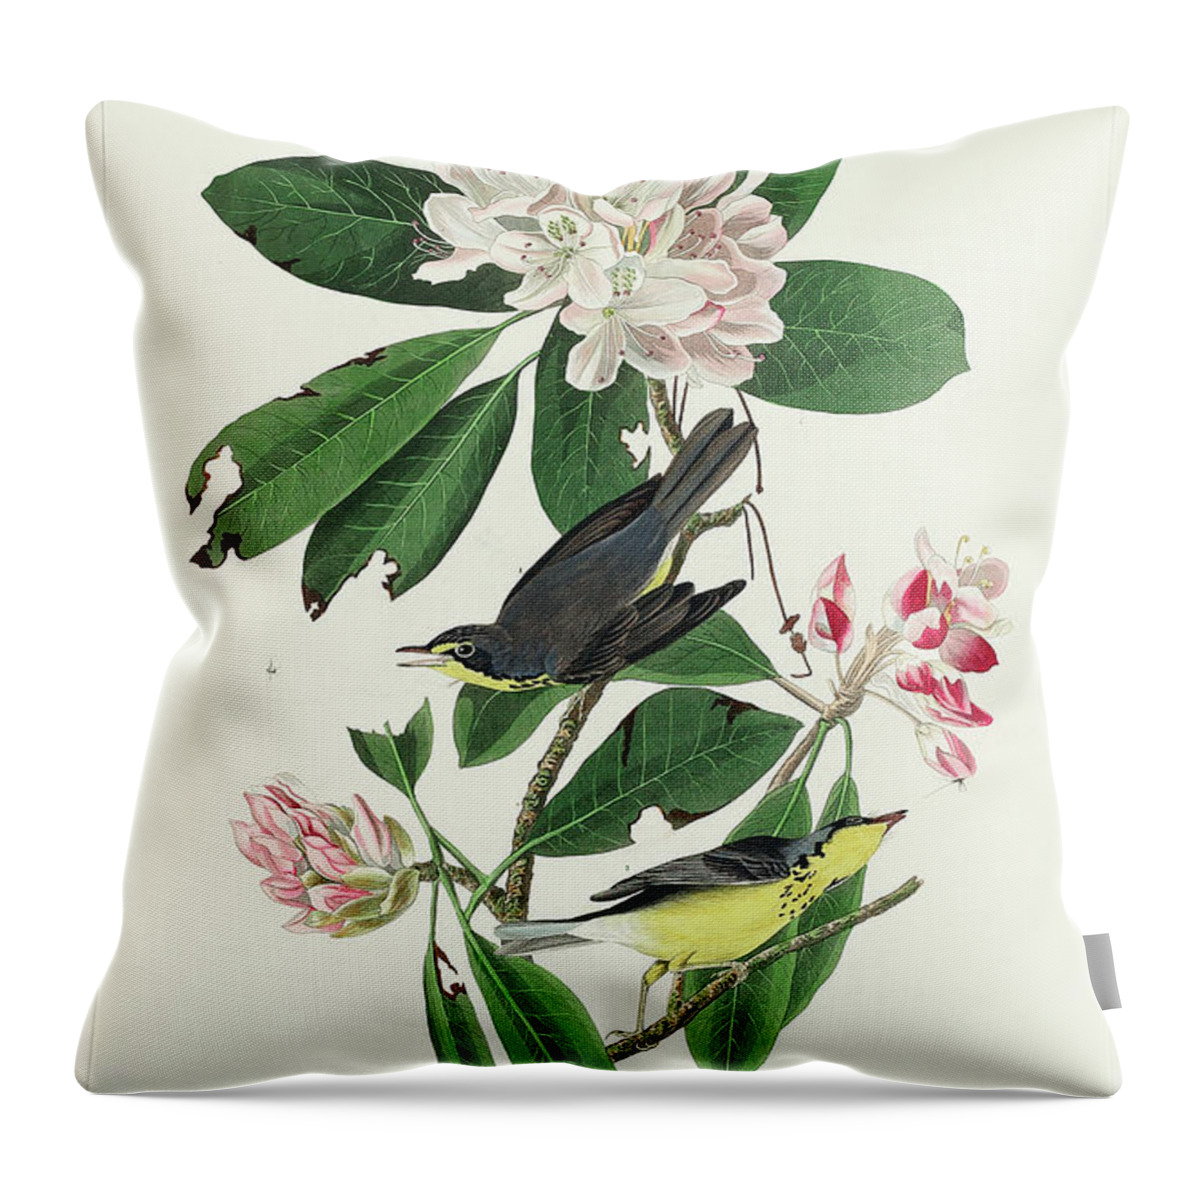 Audubon Birds Throw Pillow featuring the drawing Canada Warbler #4 by John James Audubon